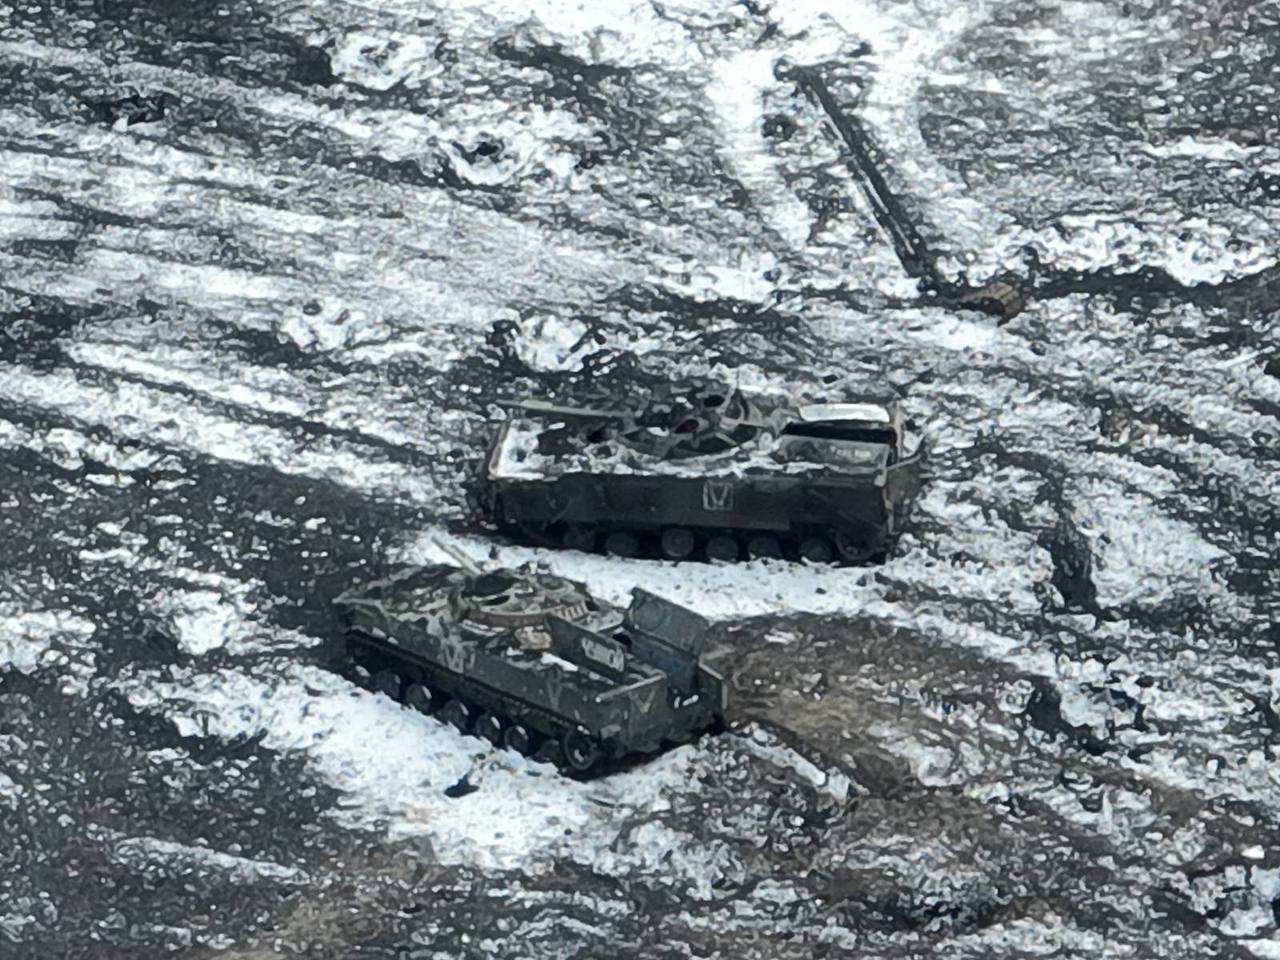 Le forze armate ucraine hanno distrutto un convoglio di attrezzature nemiche nei pressi di Ugledar con l'aiuto di droni acquistati per donazioni (foto)